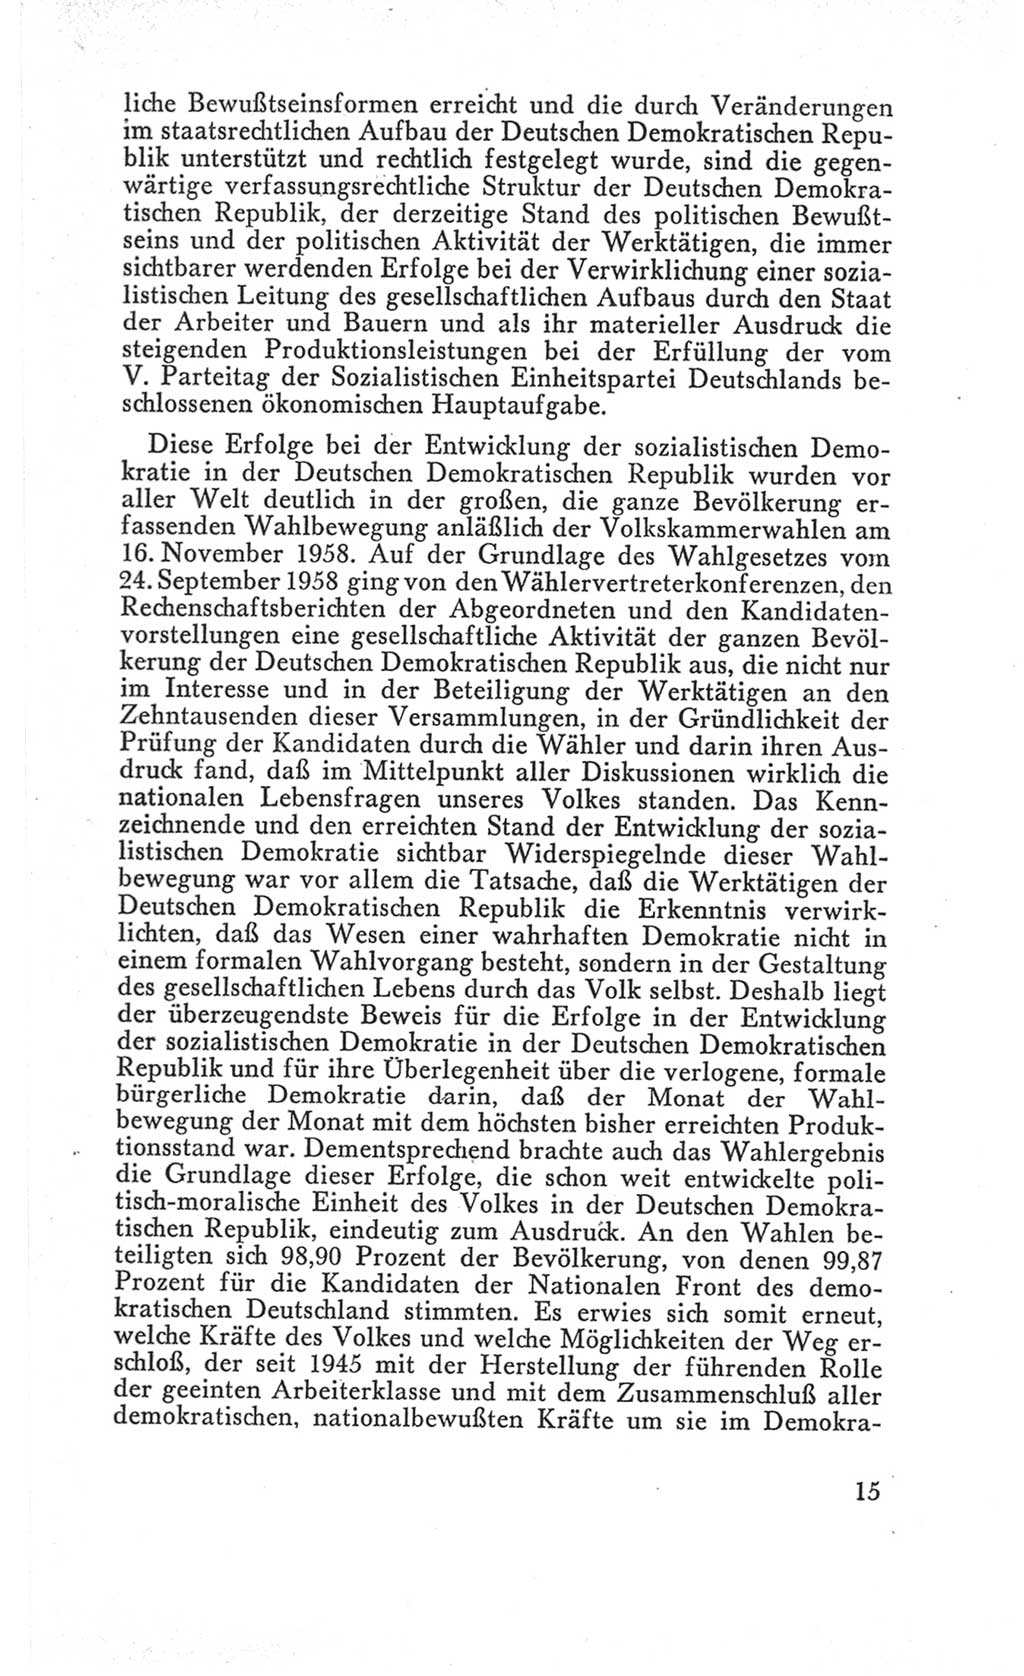 Handbuch der Volkskammer (VK) der Deutschen Demokratischen Republik (DDR), 3. Wahlperiode 1958-1963, Seite 15 (Hdb. VK. DDR 3. WP. 1958-1963, S. 15)